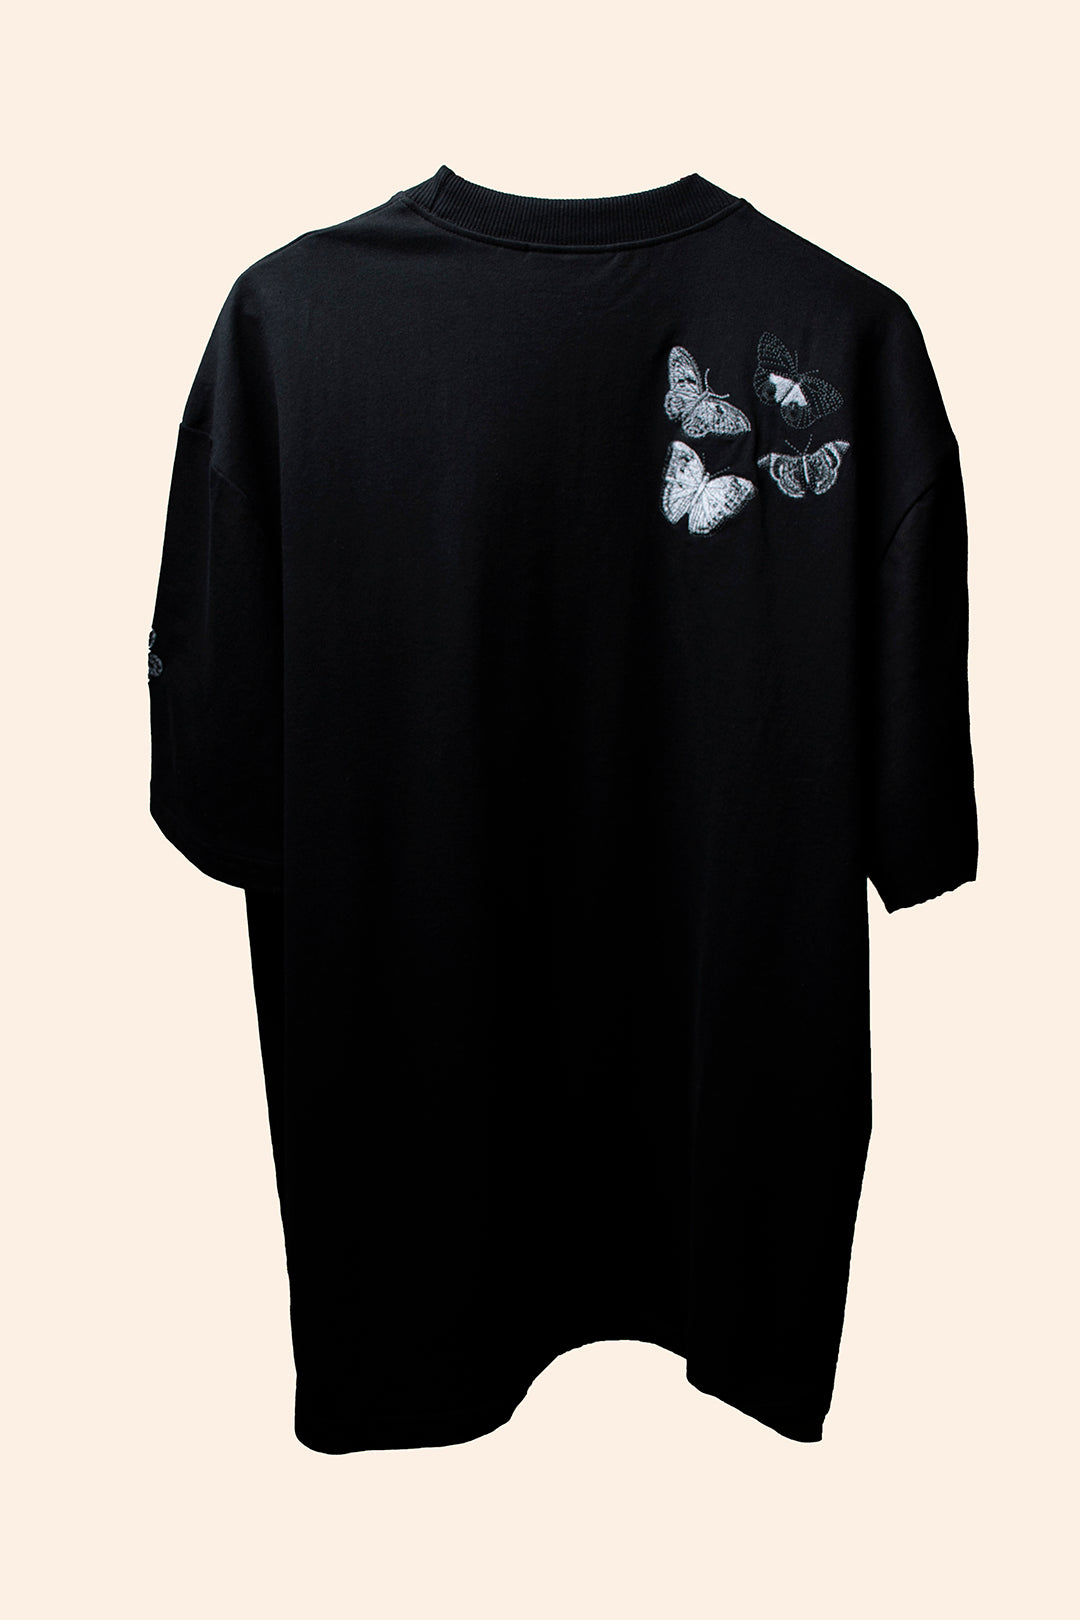 Greyscale Butterflies T-shirt – Dream Island